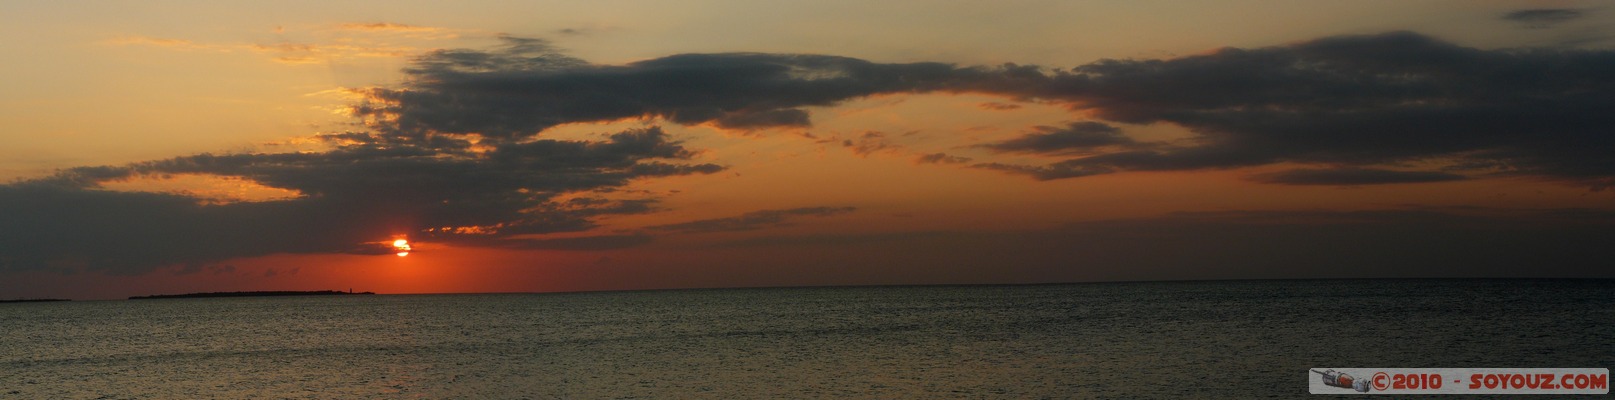 Zanzibar - Kendwa - Sunset - panorama
Mots-clés: mer sunset panorama